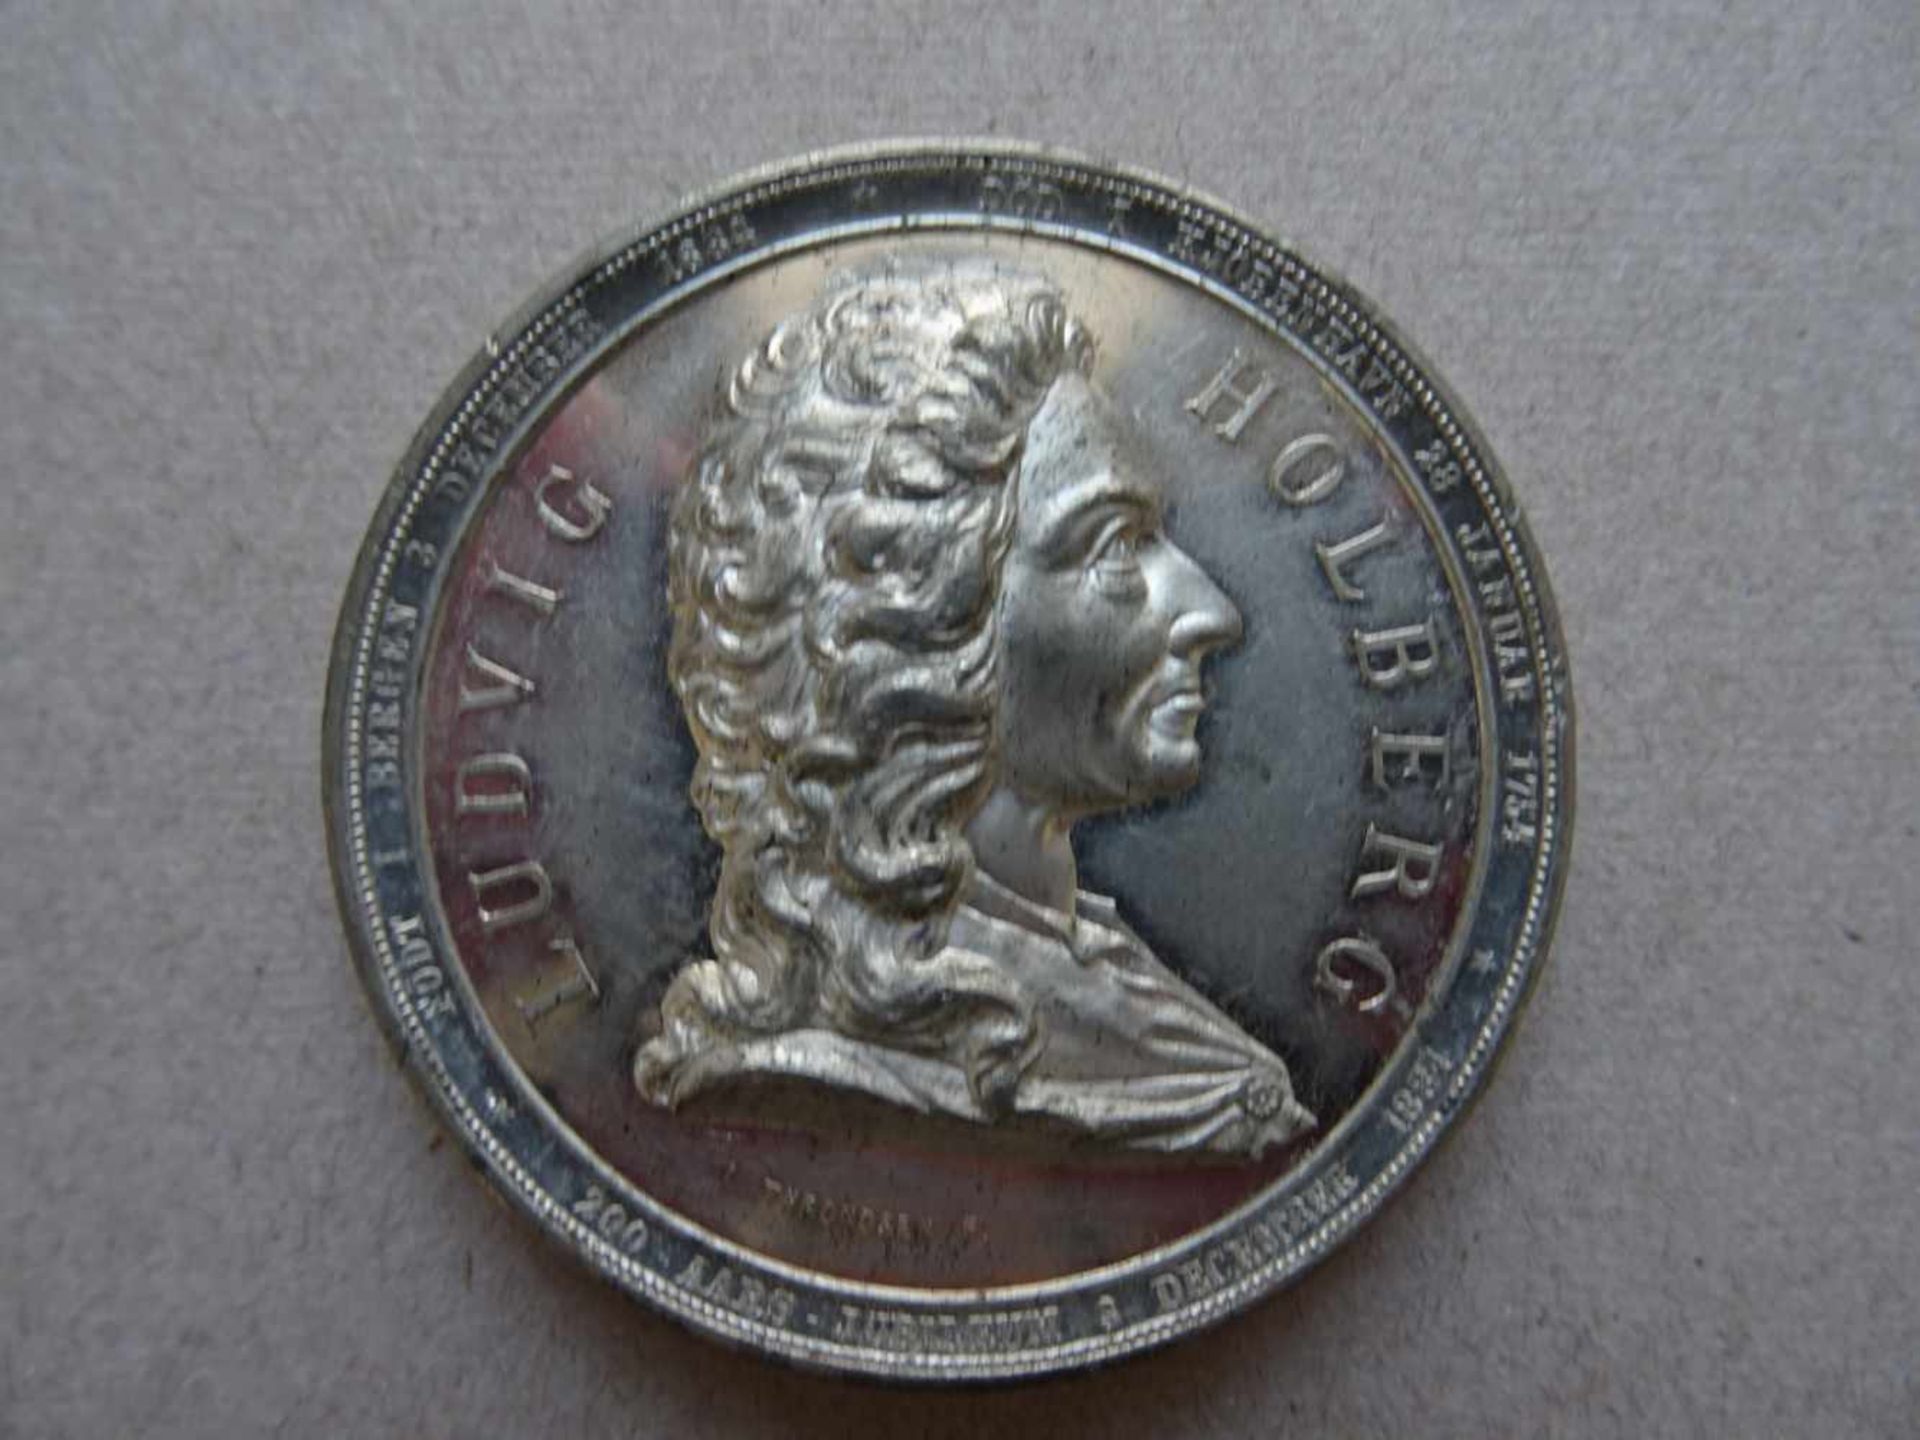 Medaille.-Ludvig Holberg. Zinn-Medaille anläßlich des 200. Geburtstages am 3. Dez. 1884. Medaille